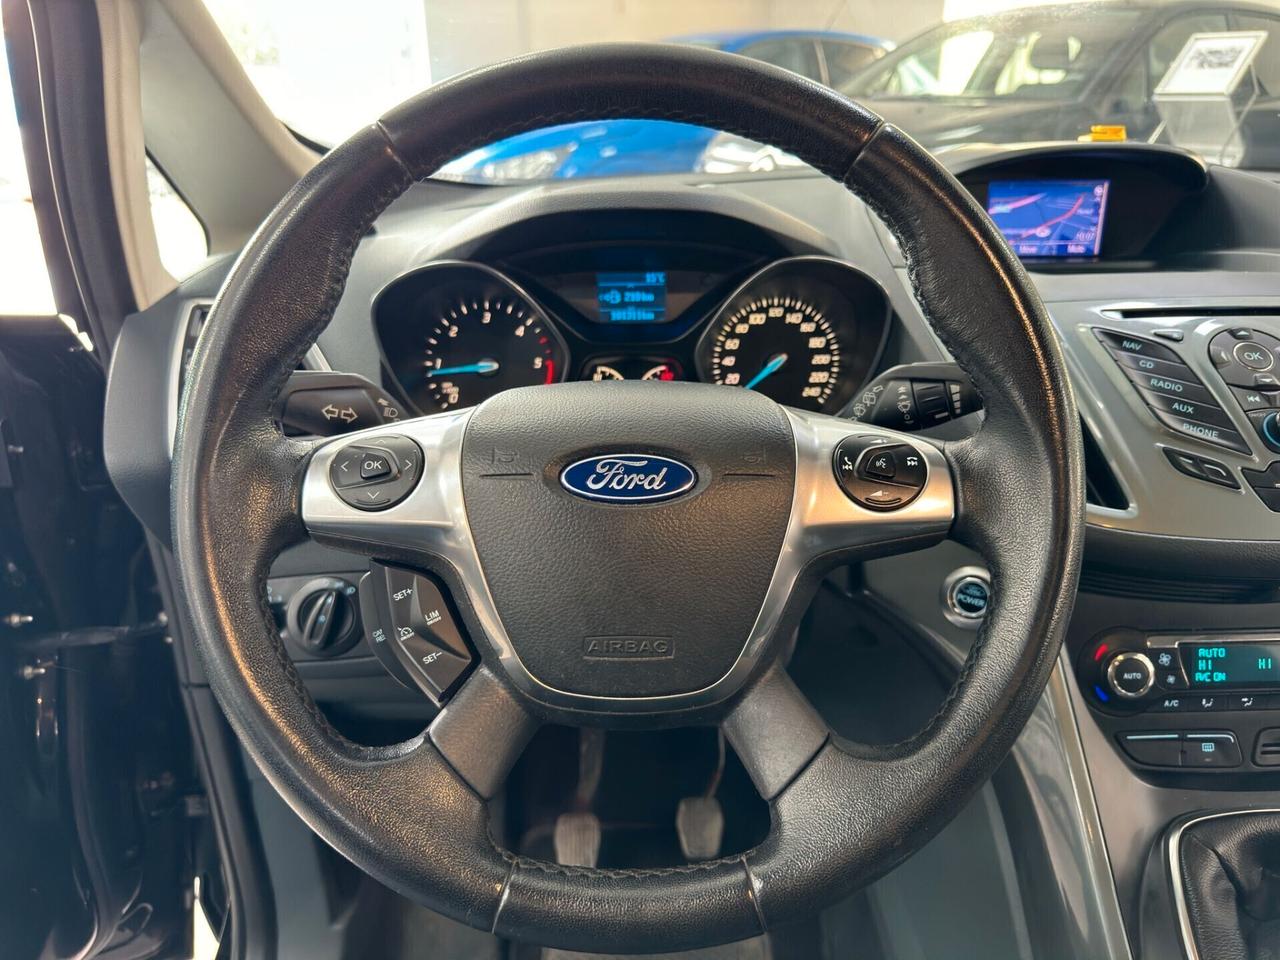 Ford C-Max 1.6 TDCi 115CV Titanium - 2014